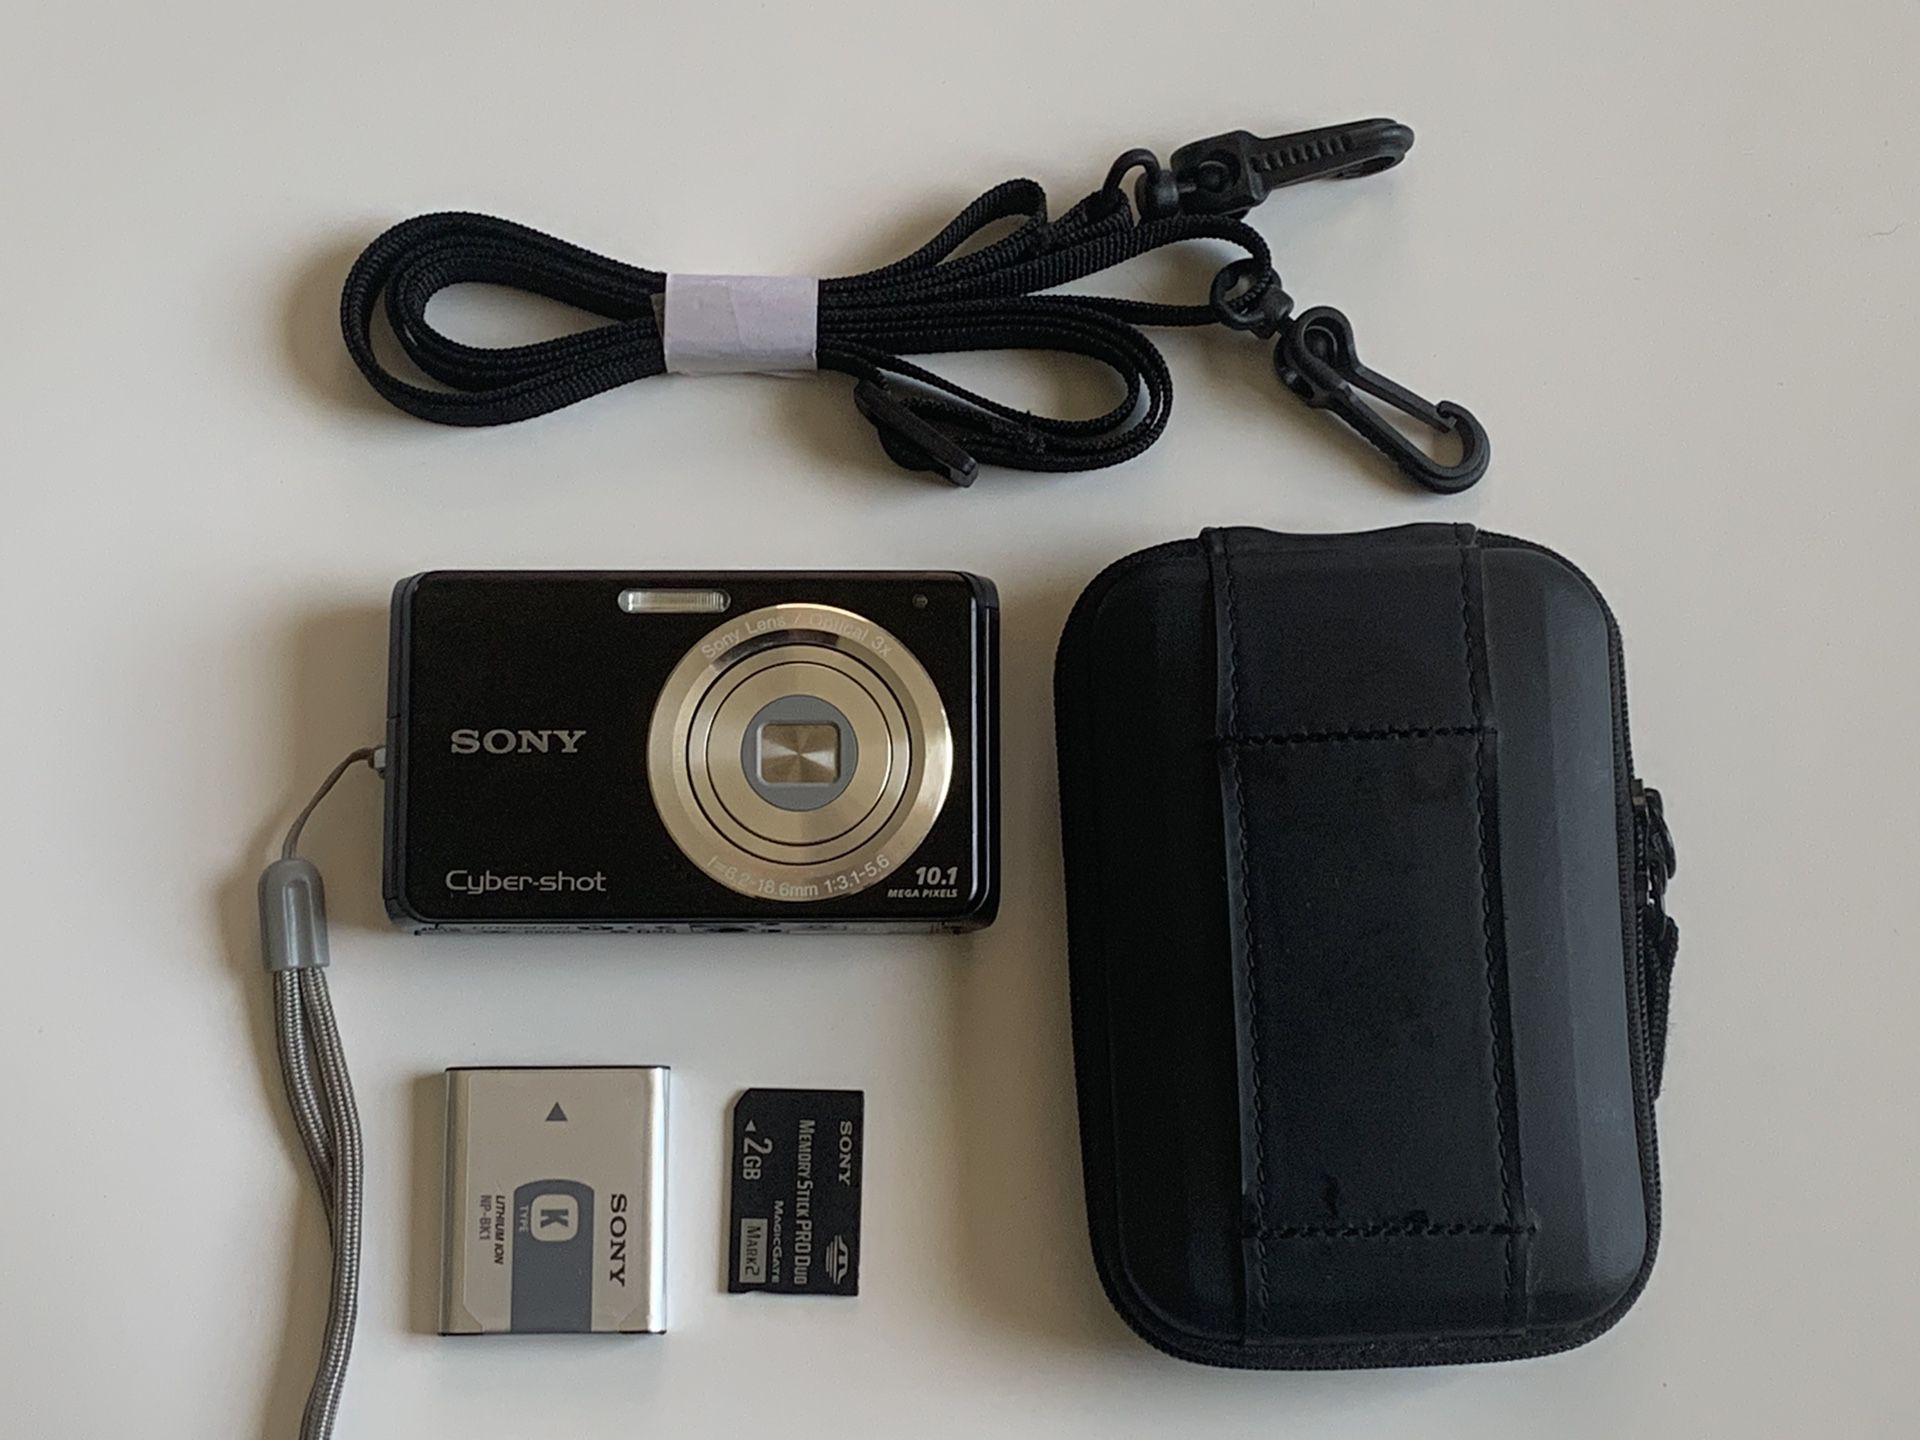 Sony Cybershot DSC-W180 10.1MP Digital Camera